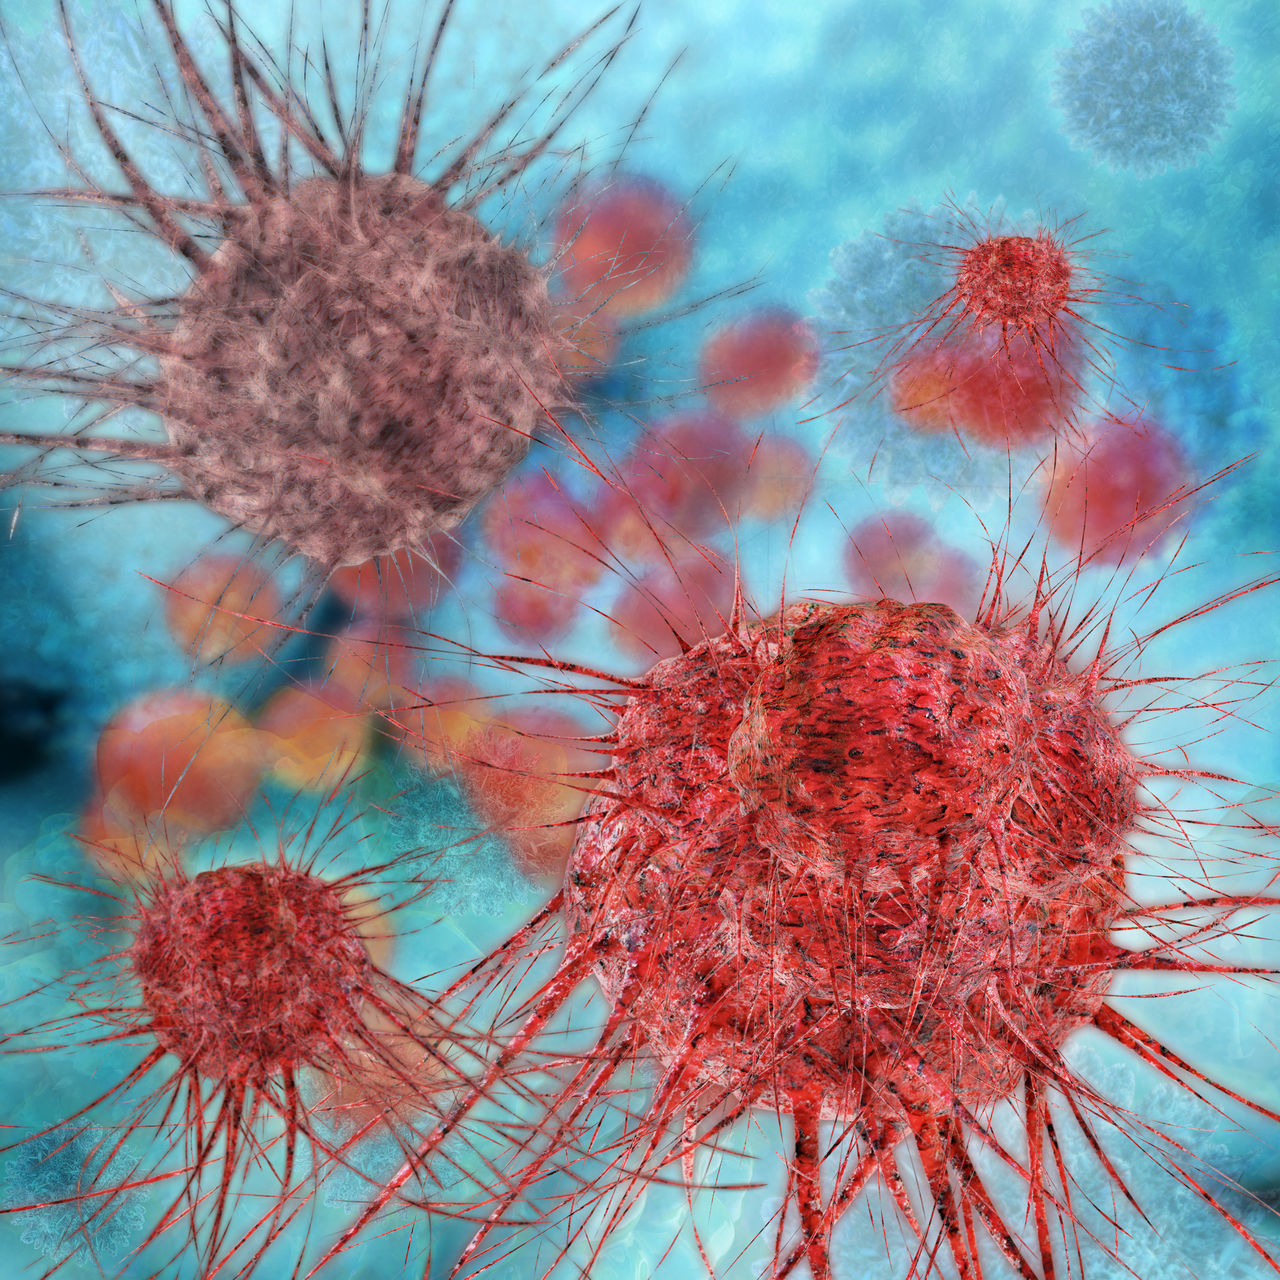 Corona und Onkologie: Was tun bei Verdacht auf Krebs? 